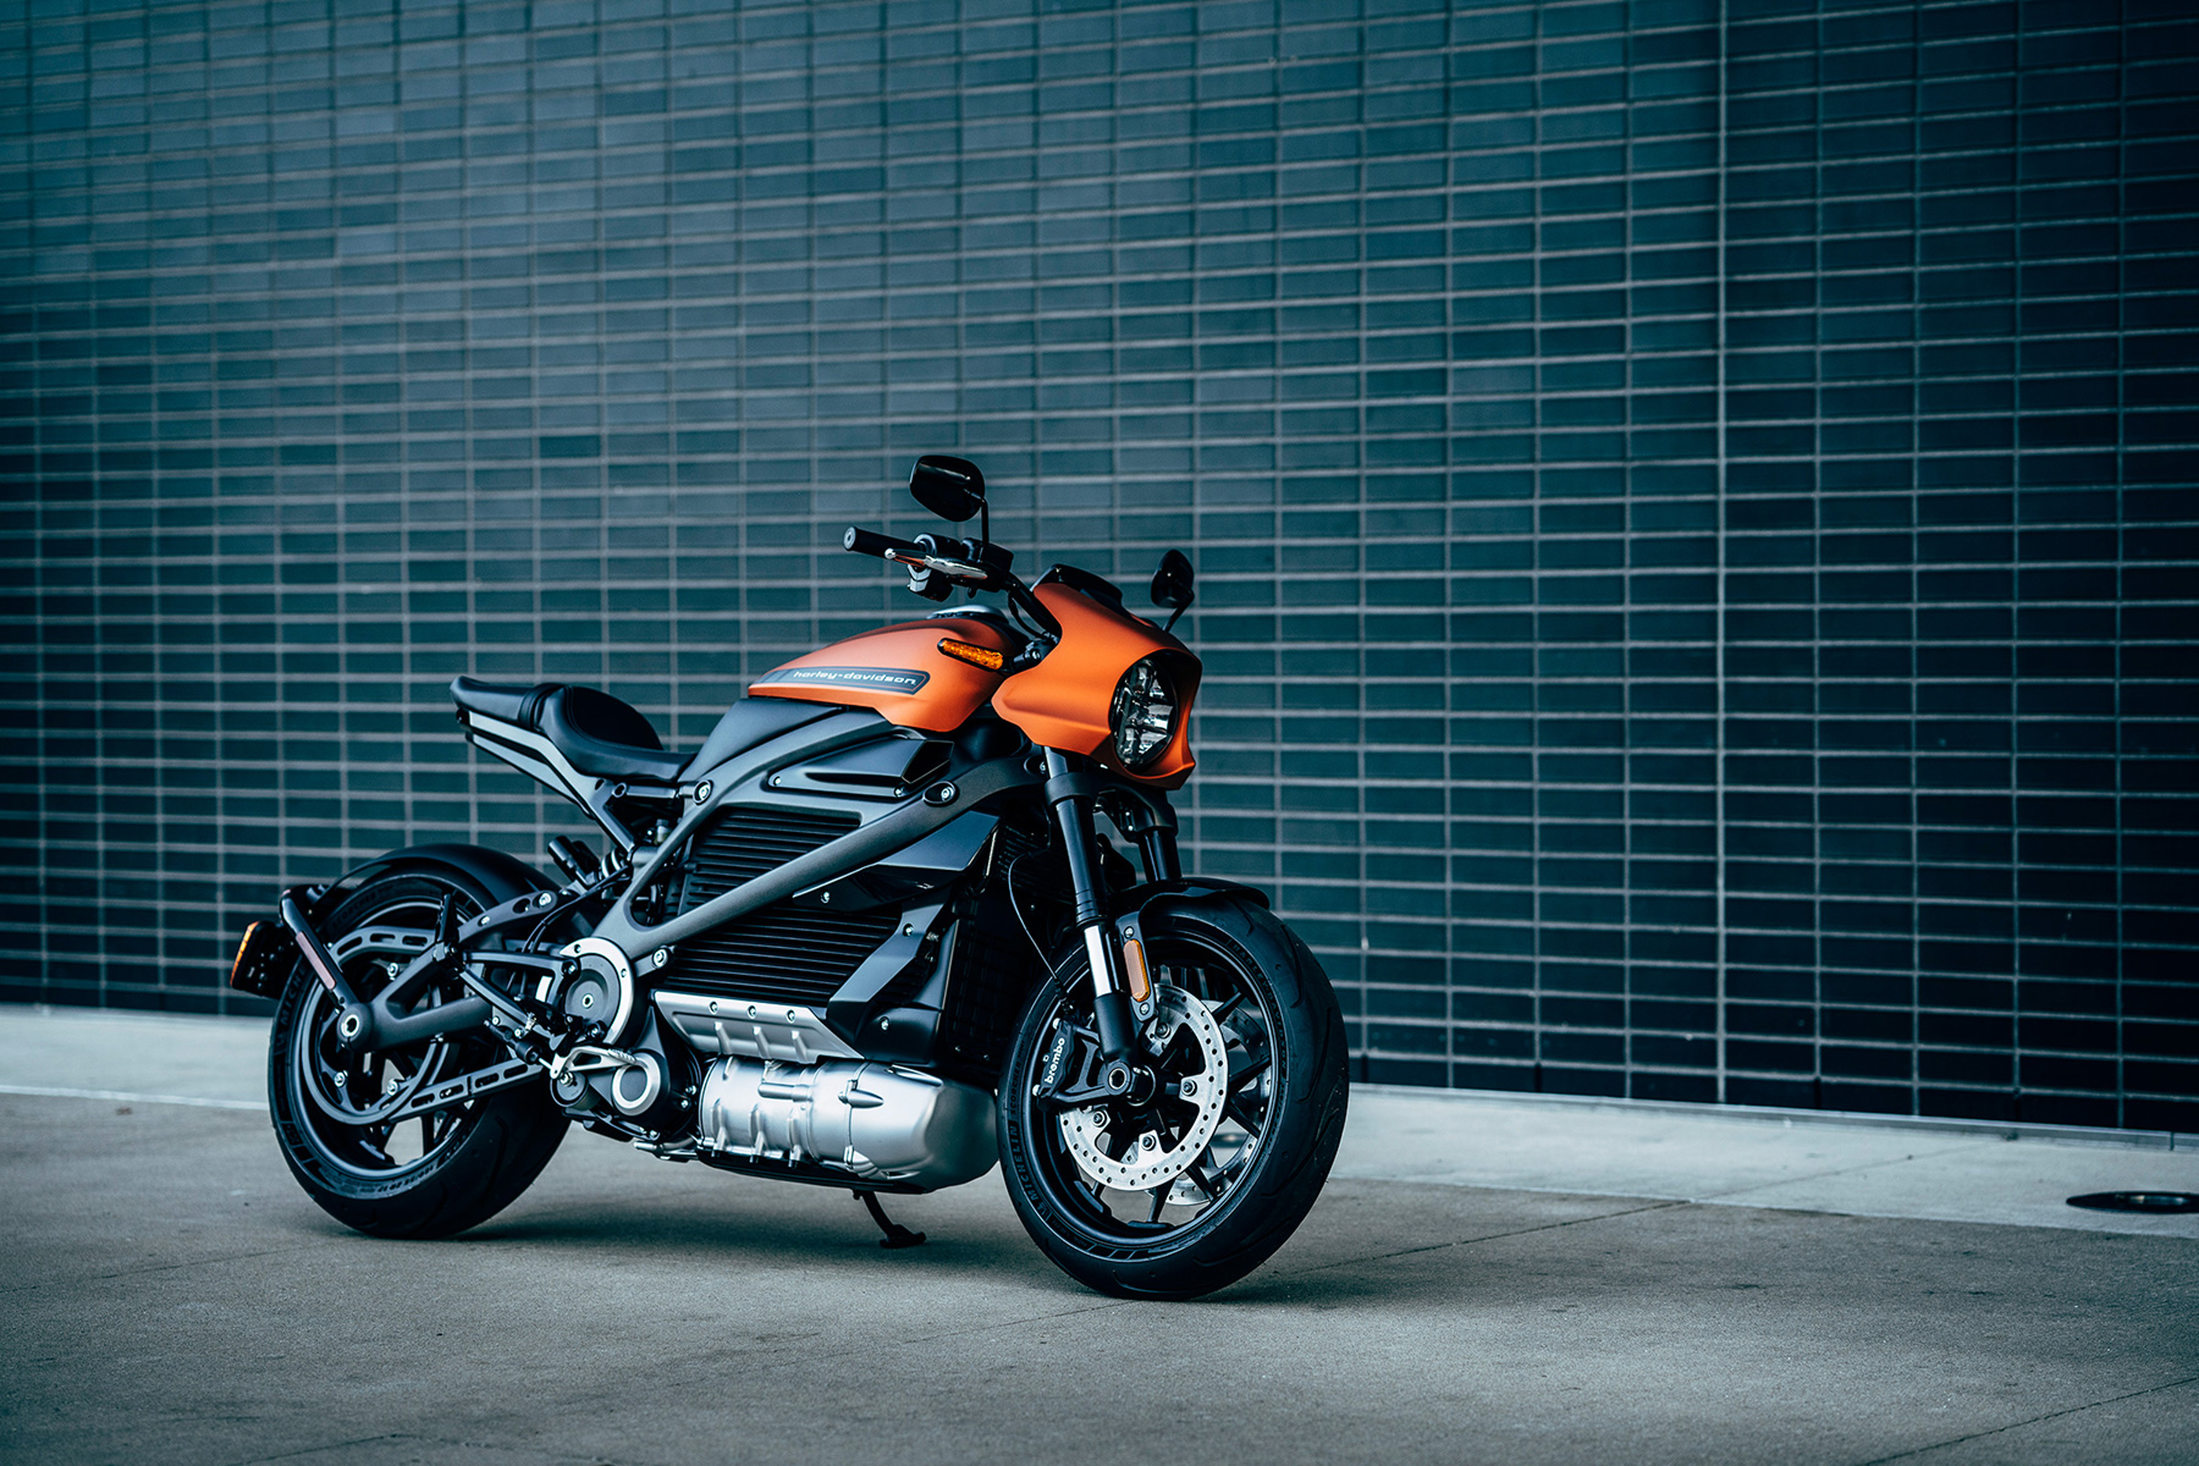 Harley-Davidson ilk elektrikli motosikleti için ücretsiz şarj hizmeti sunacak